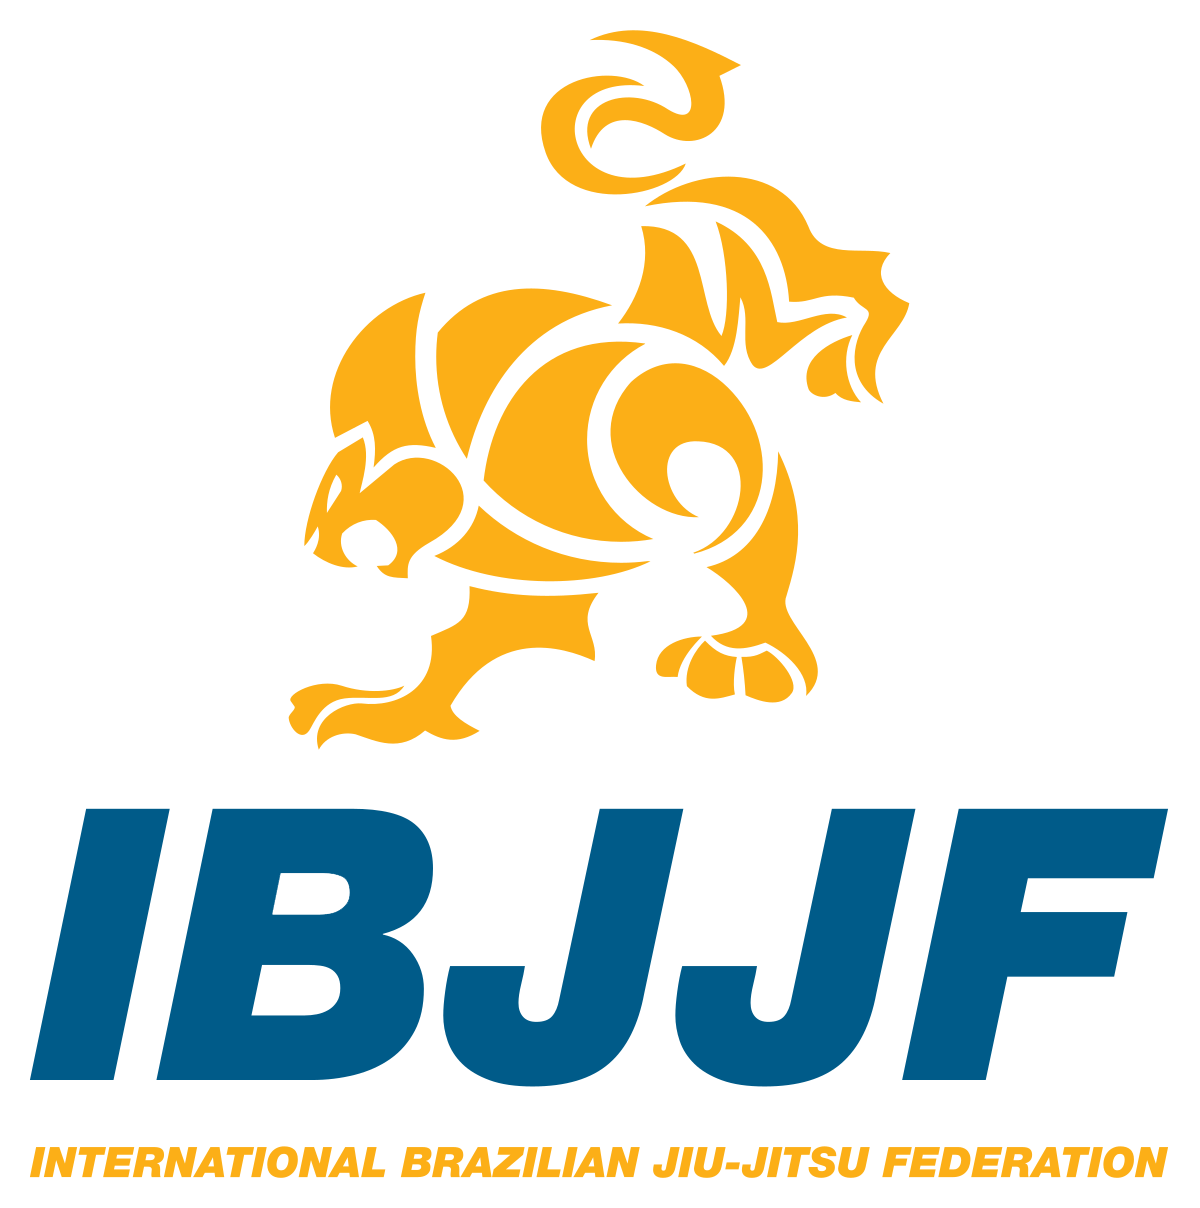 IBJJF - International Brazilian Jiu-Jitsu Federation